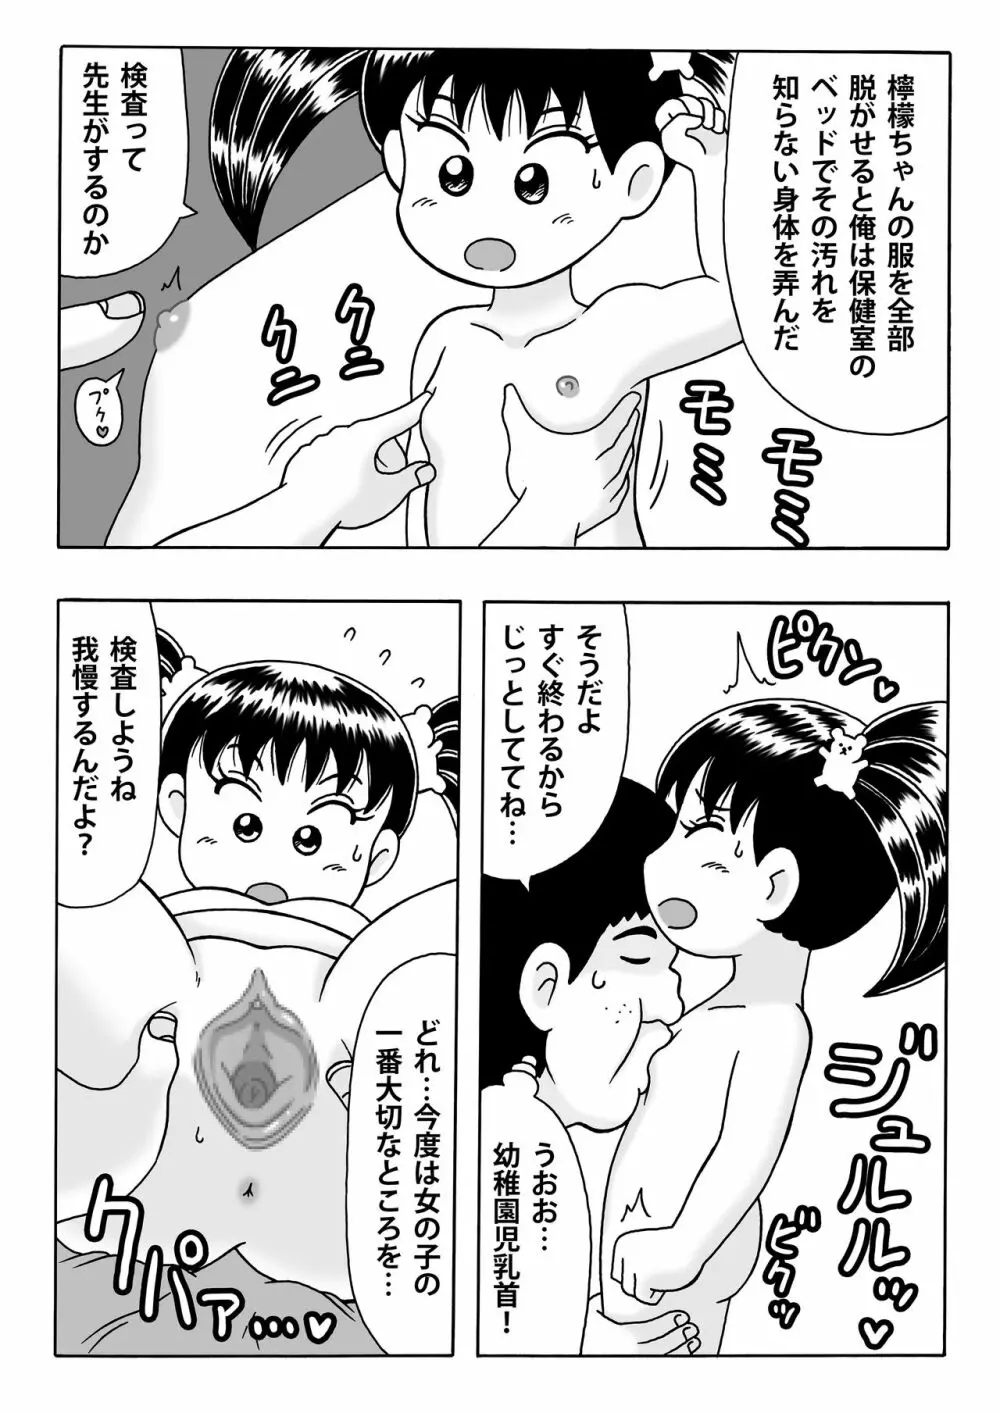 檸檬ちゃんとロリコン保育士 - page2